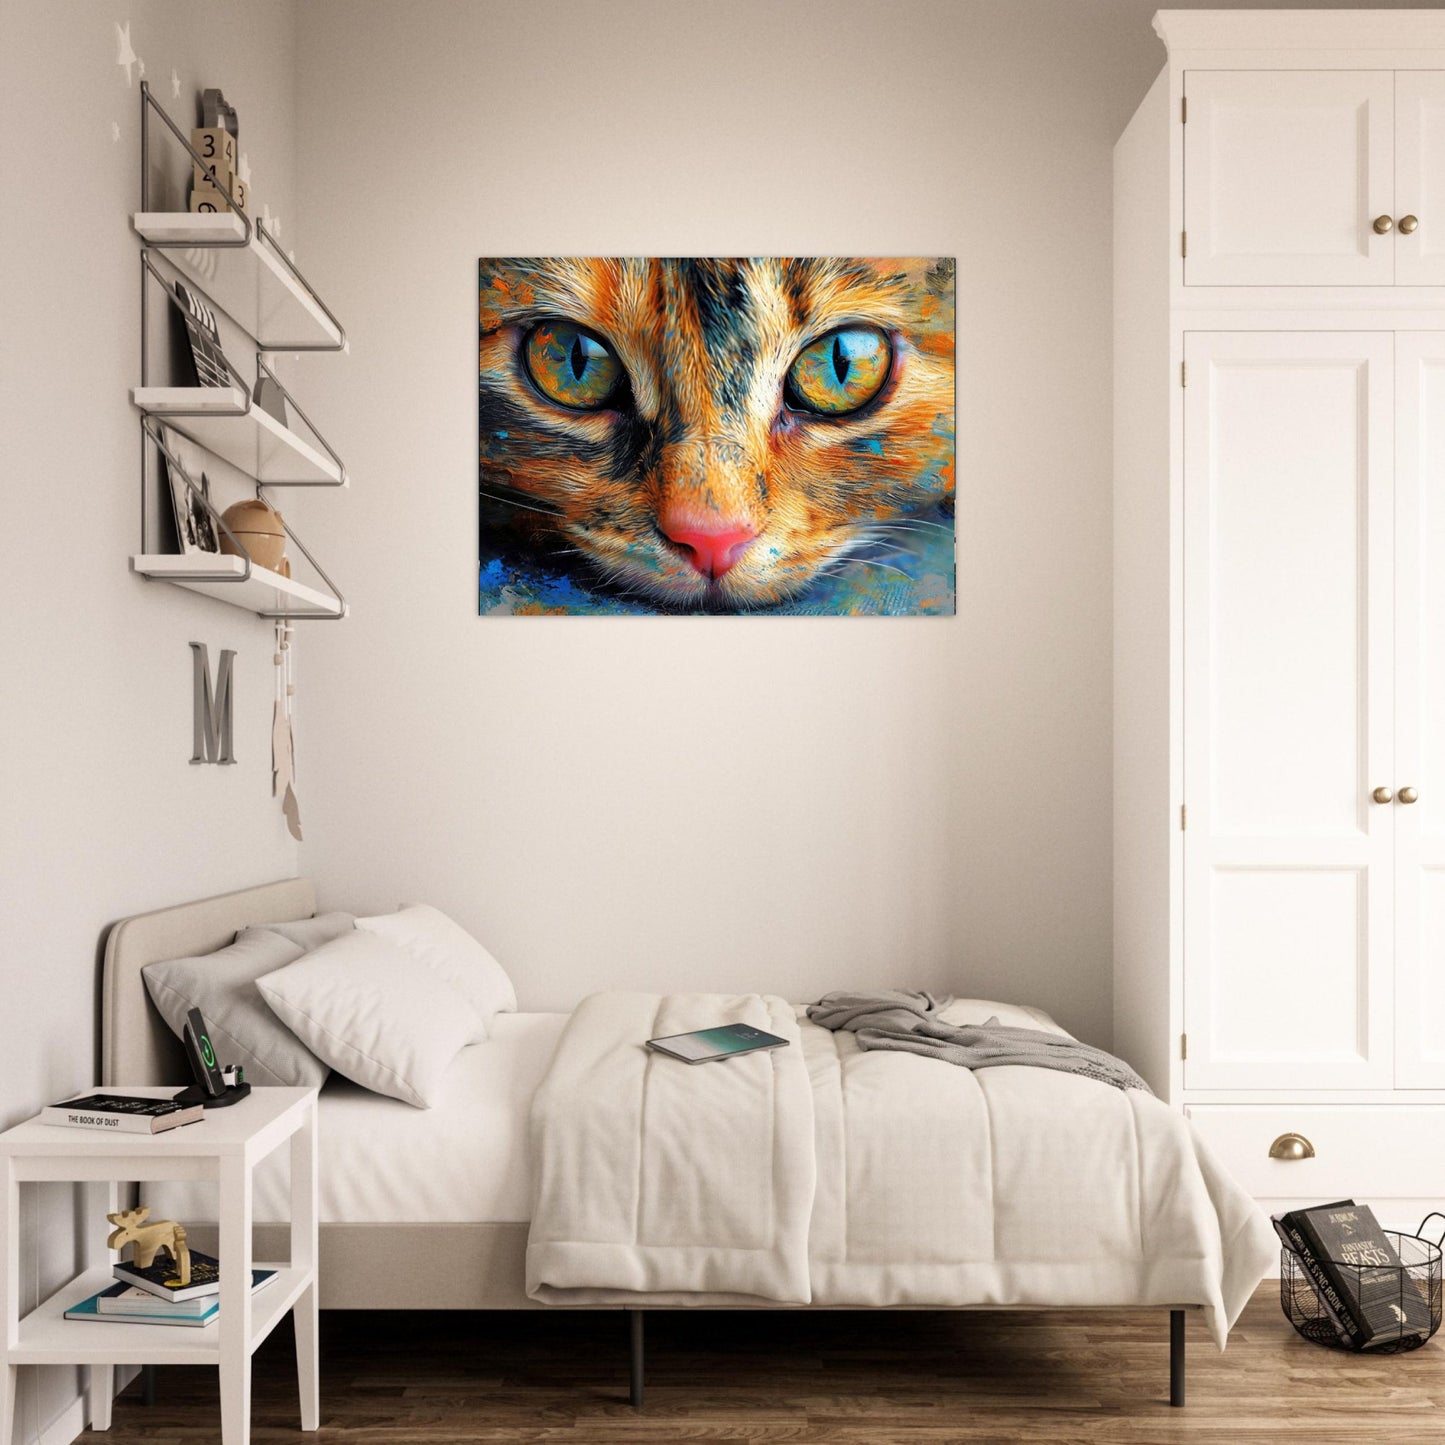 Katzenaugen in Farbe 30x40 cm / 12x16″ / Poster auf halbmattem Papier